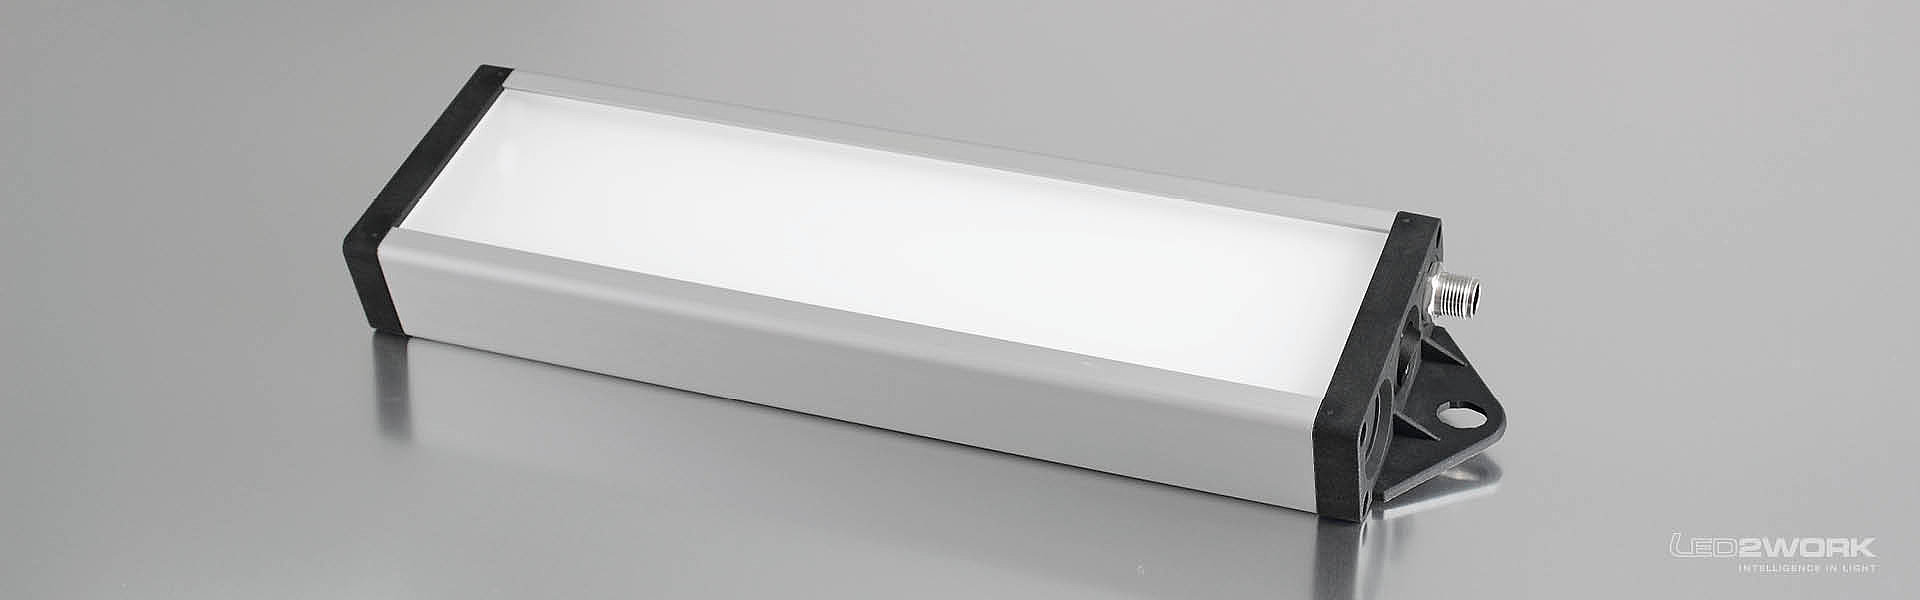 Illustrazione dell'apparecchio LED per applicazioni e sistemi di illuminazione LED e dell'apparecchio LED di segnalazione UNILED SL RGB-W di LED2WORK